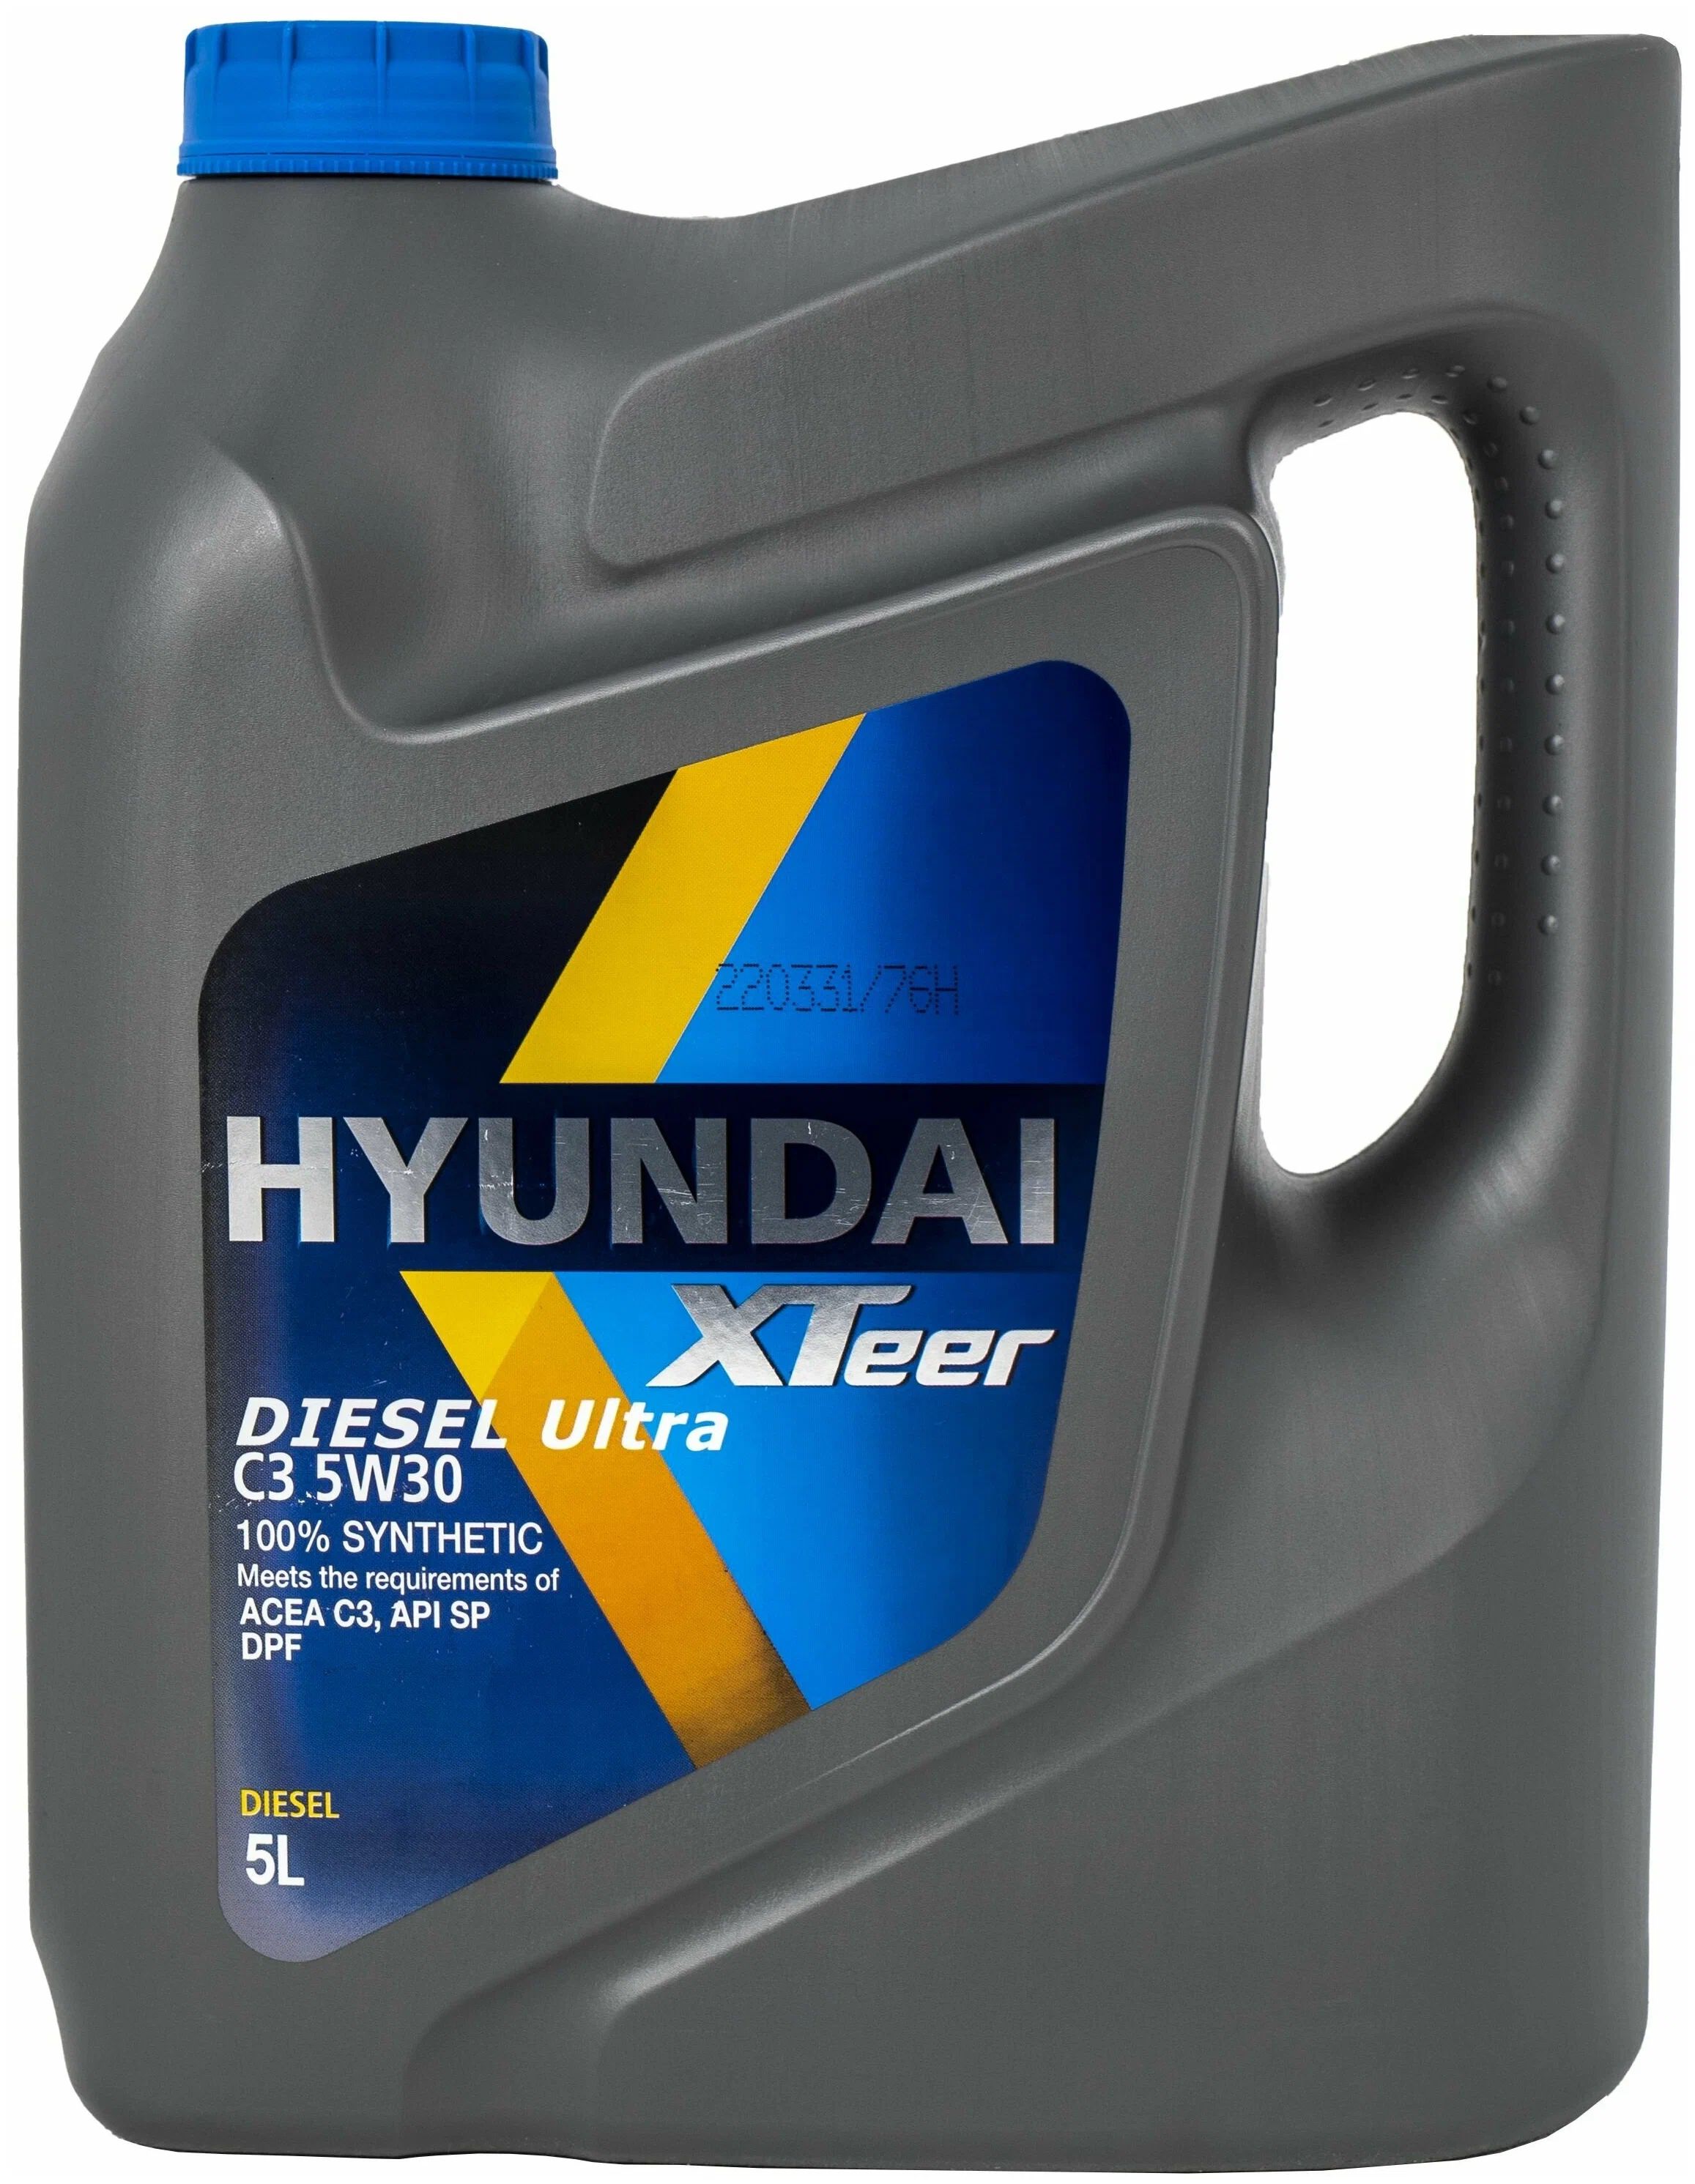 Hyundai xteer g800 5w30. Hyundai XTEER Diesel Ultra c3 5w-30. XTEER Diesel Ultra c3 5w30. Hyundai XTEER Diesel Ultra 5w30. XTEER Diesel Ultra 5w30.